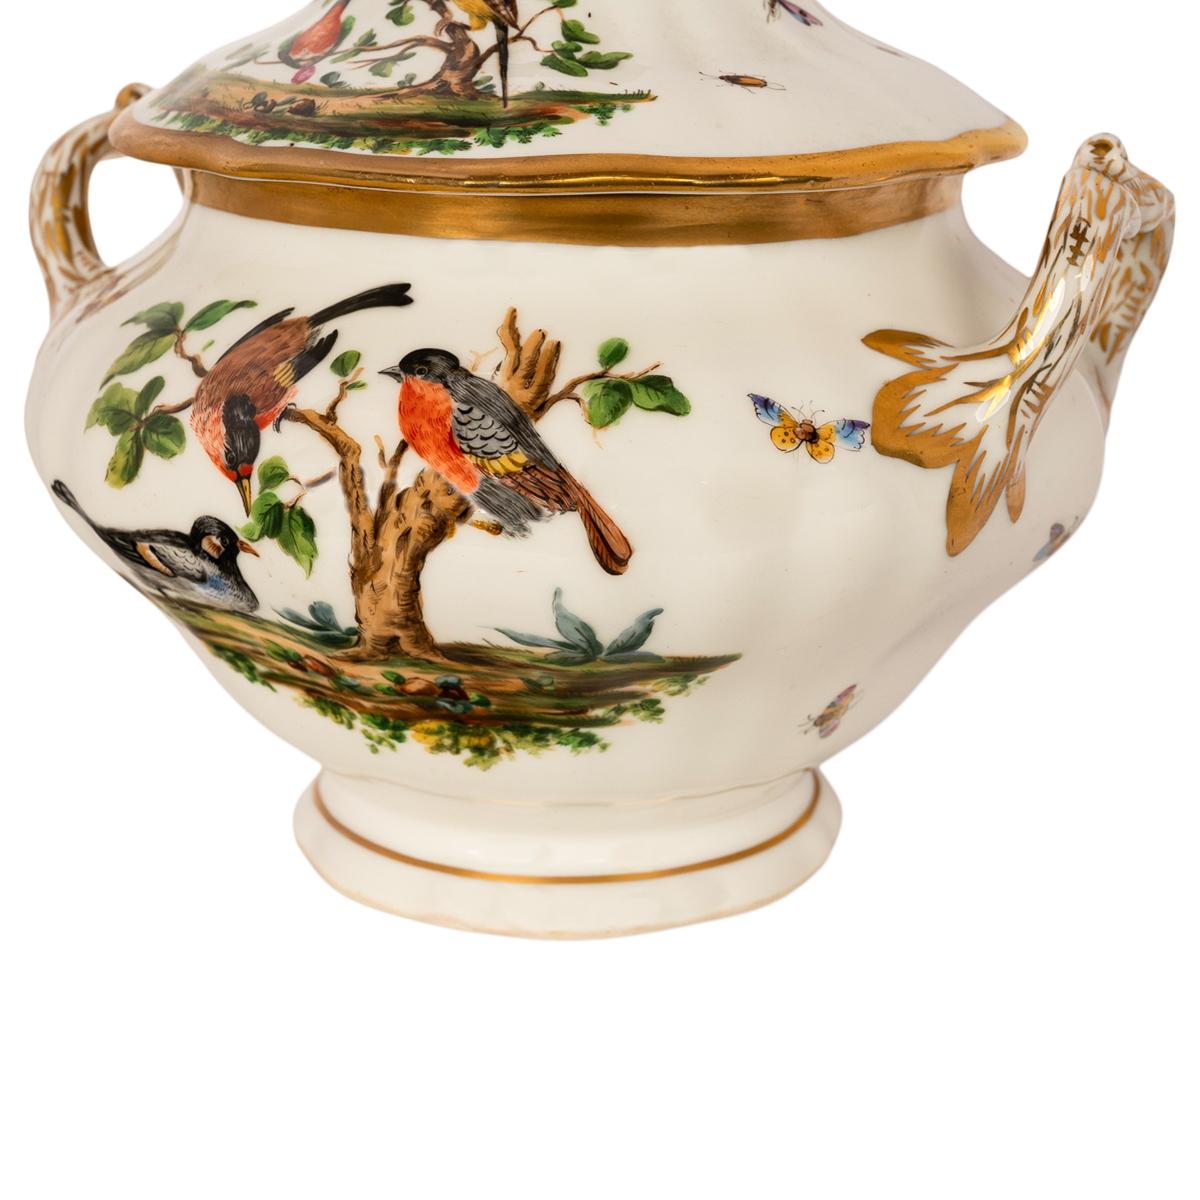 Très élégante coupe/ouverture à couvercle en porcelaine KPM du XIXe siècle, peinte à la main et dorée, décorée d'oiseaux et de papillons, 1840-1895.
Cette très belle soupière à couvercle fabriquée par le célèbre porcelainier allemand KPM 